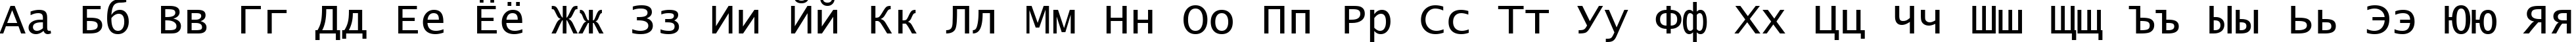 Пример написания русского алфавита шрифтом Lucida Console